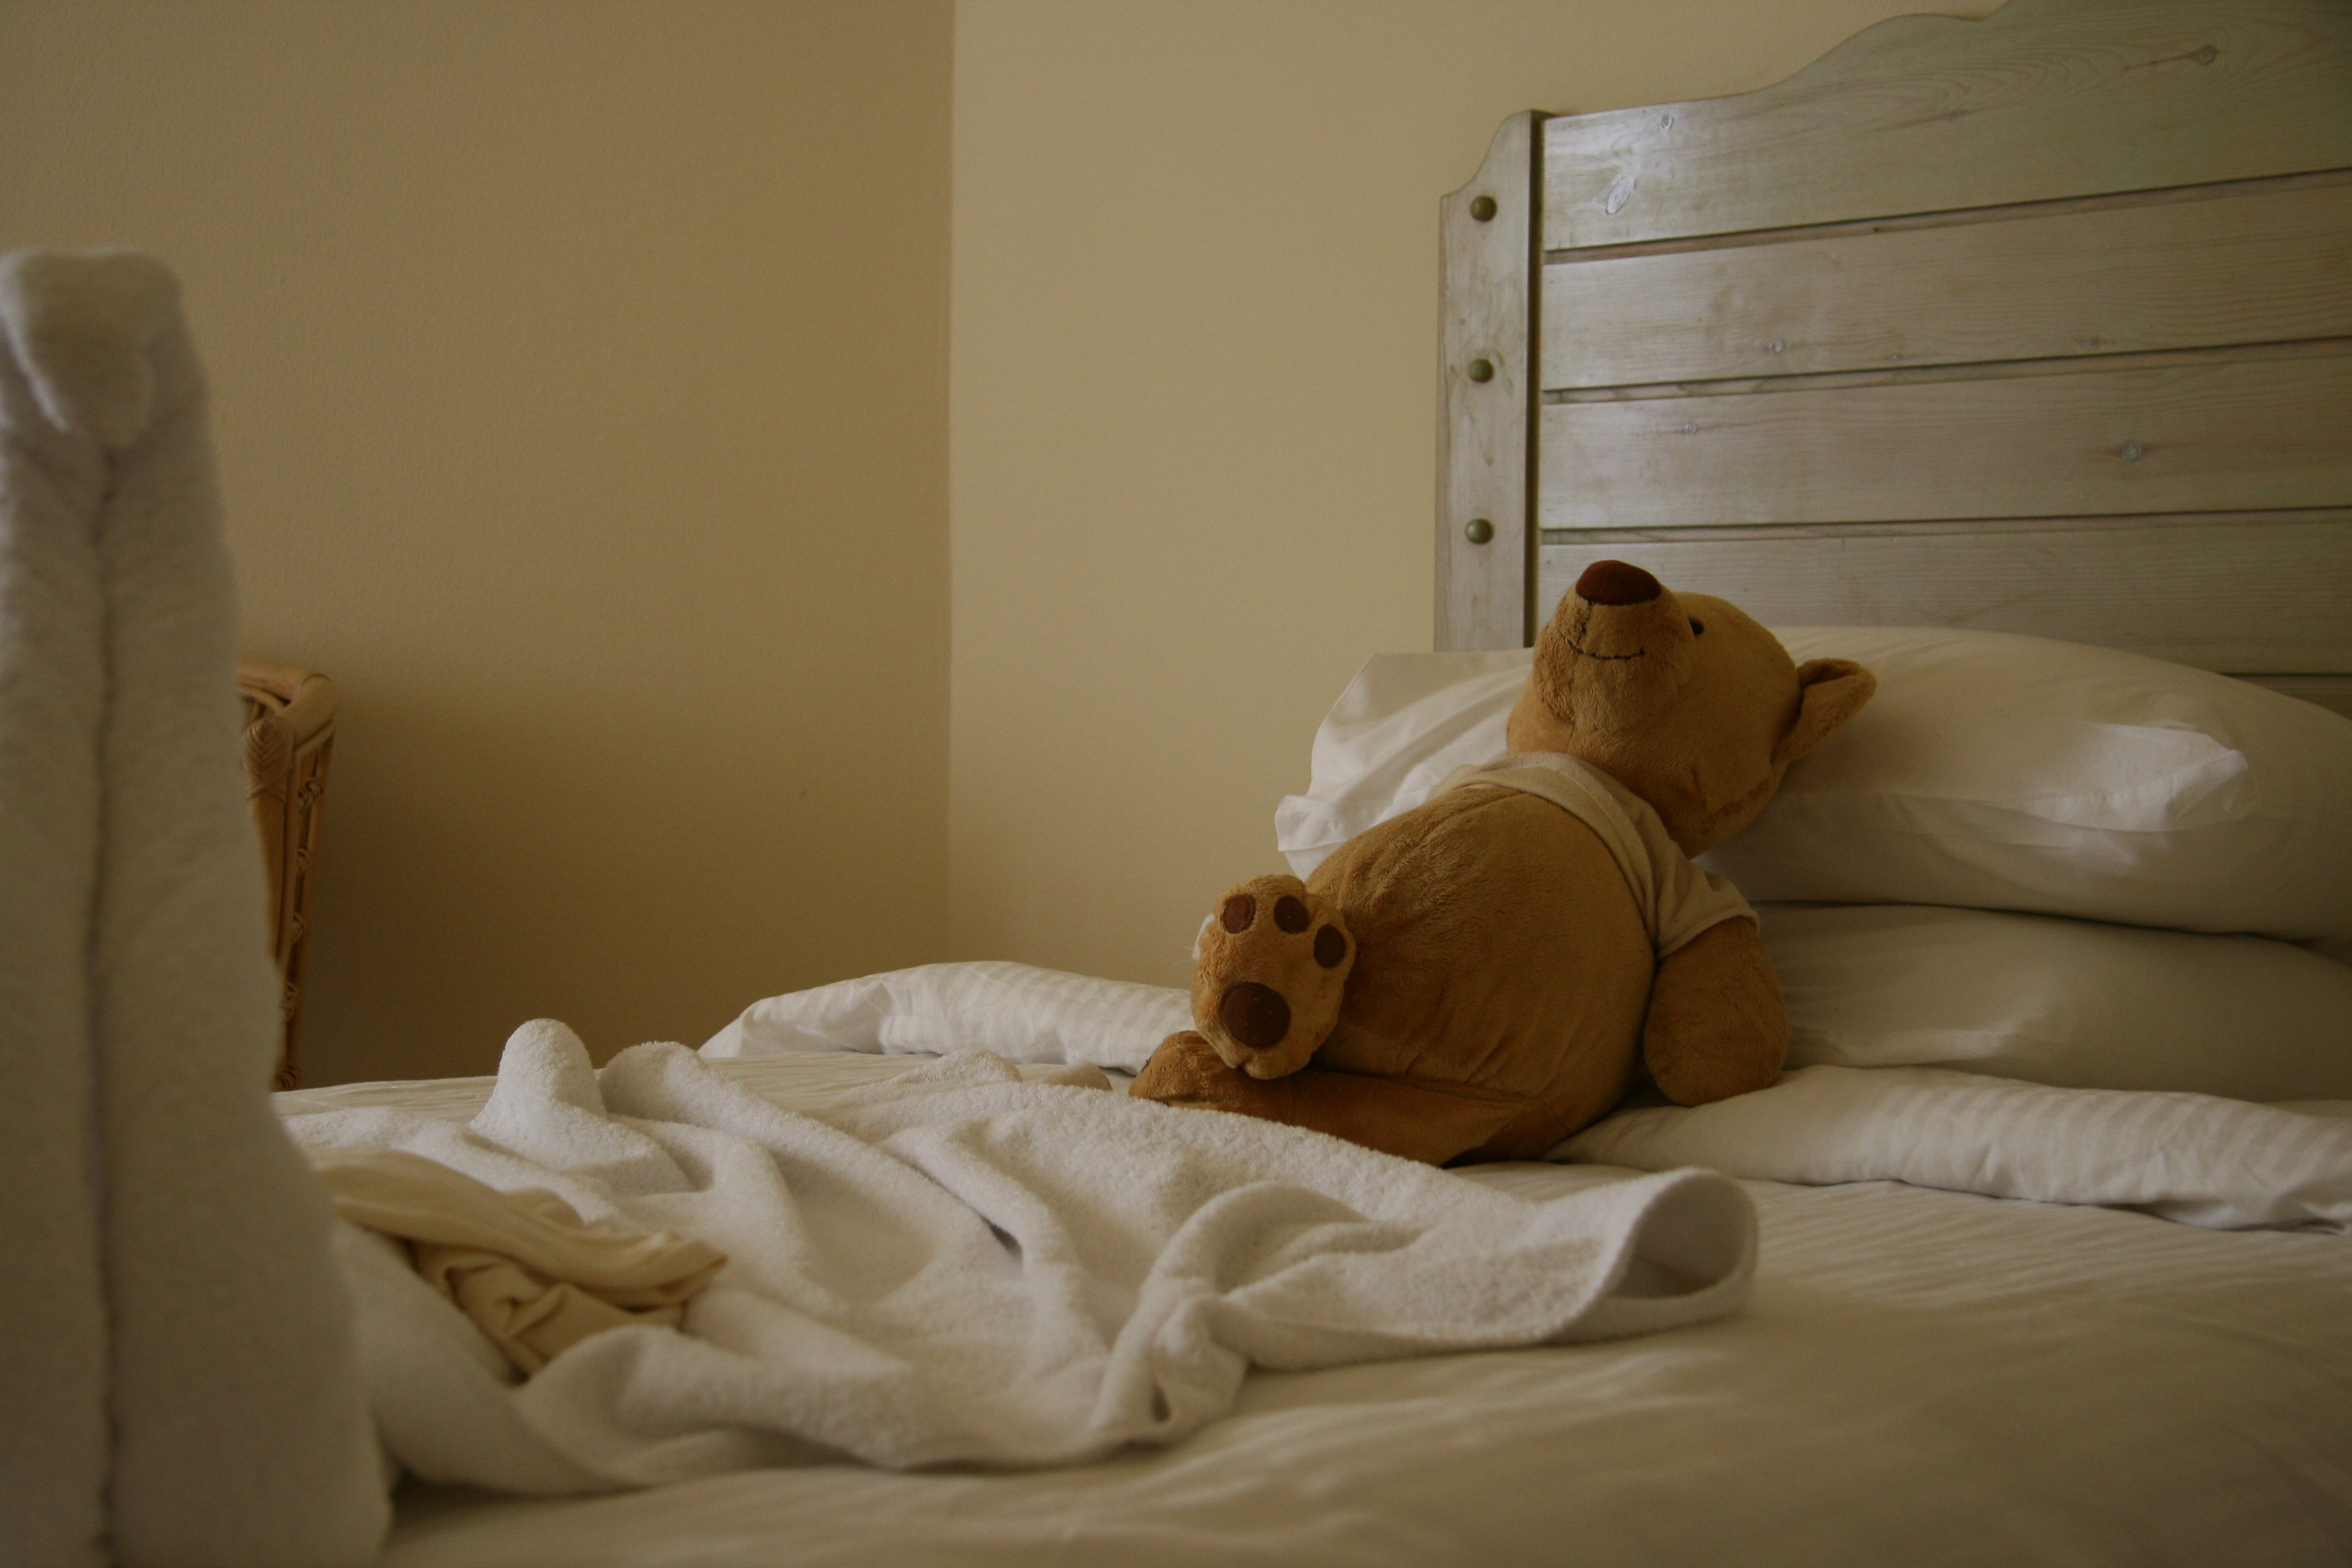 Мишка лег спать. Медвежонок в постели. Кровать "мишки". Валяться в кровати.